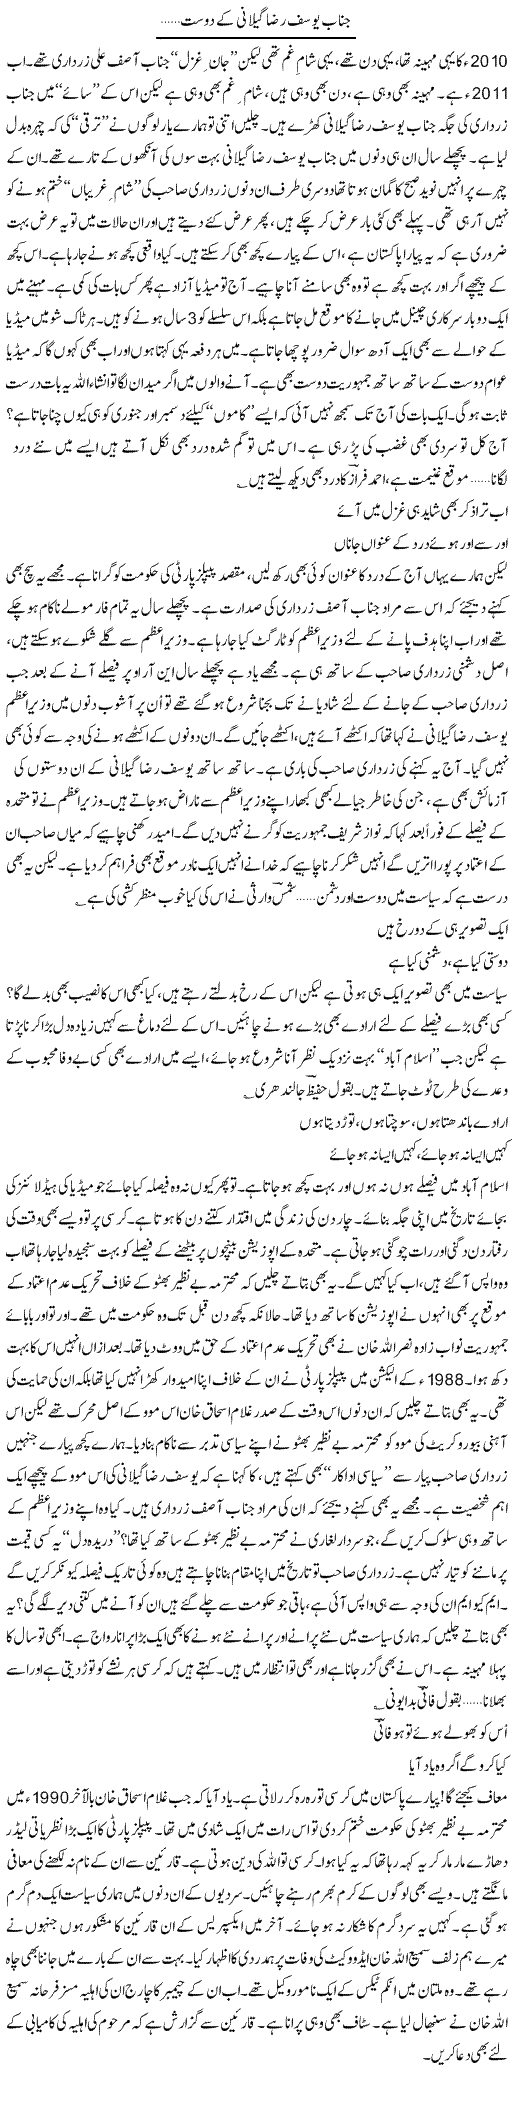 Zardari Geelani Express Column Ijaz Hafeez 16 January 2011